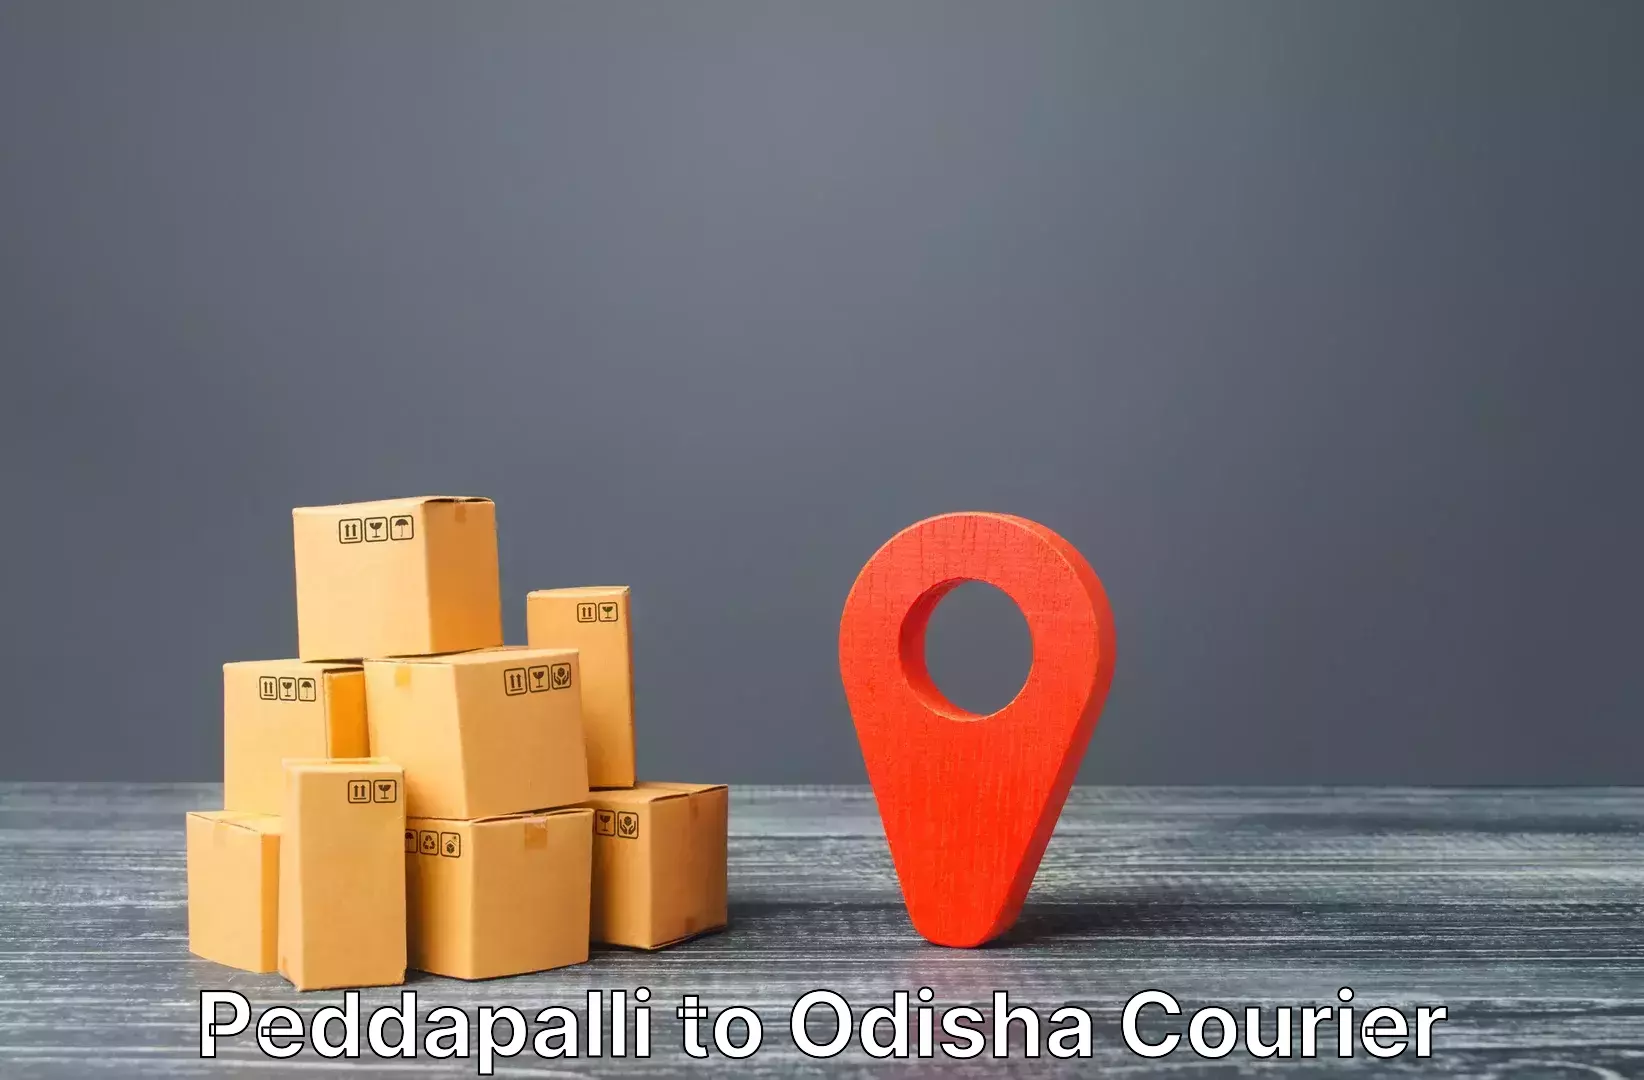 Baggage transport scheduler Peddapalli to Sukinda